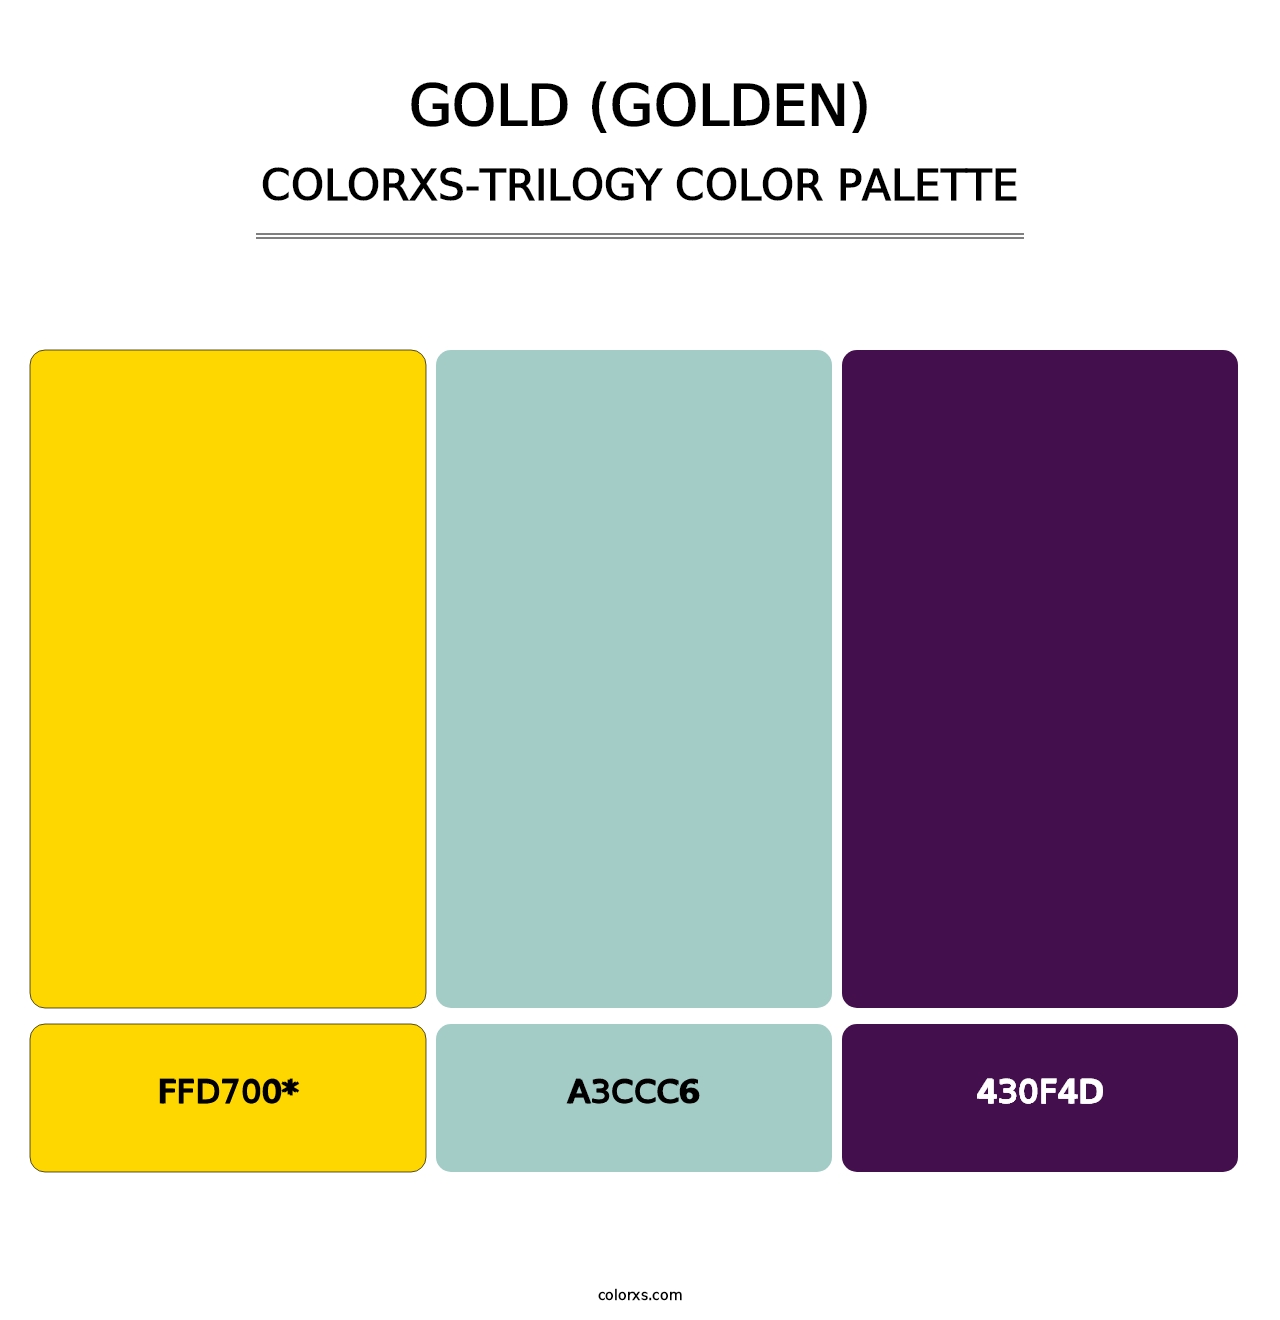 Gold (Golden) - Colorxs Trilogy Palette